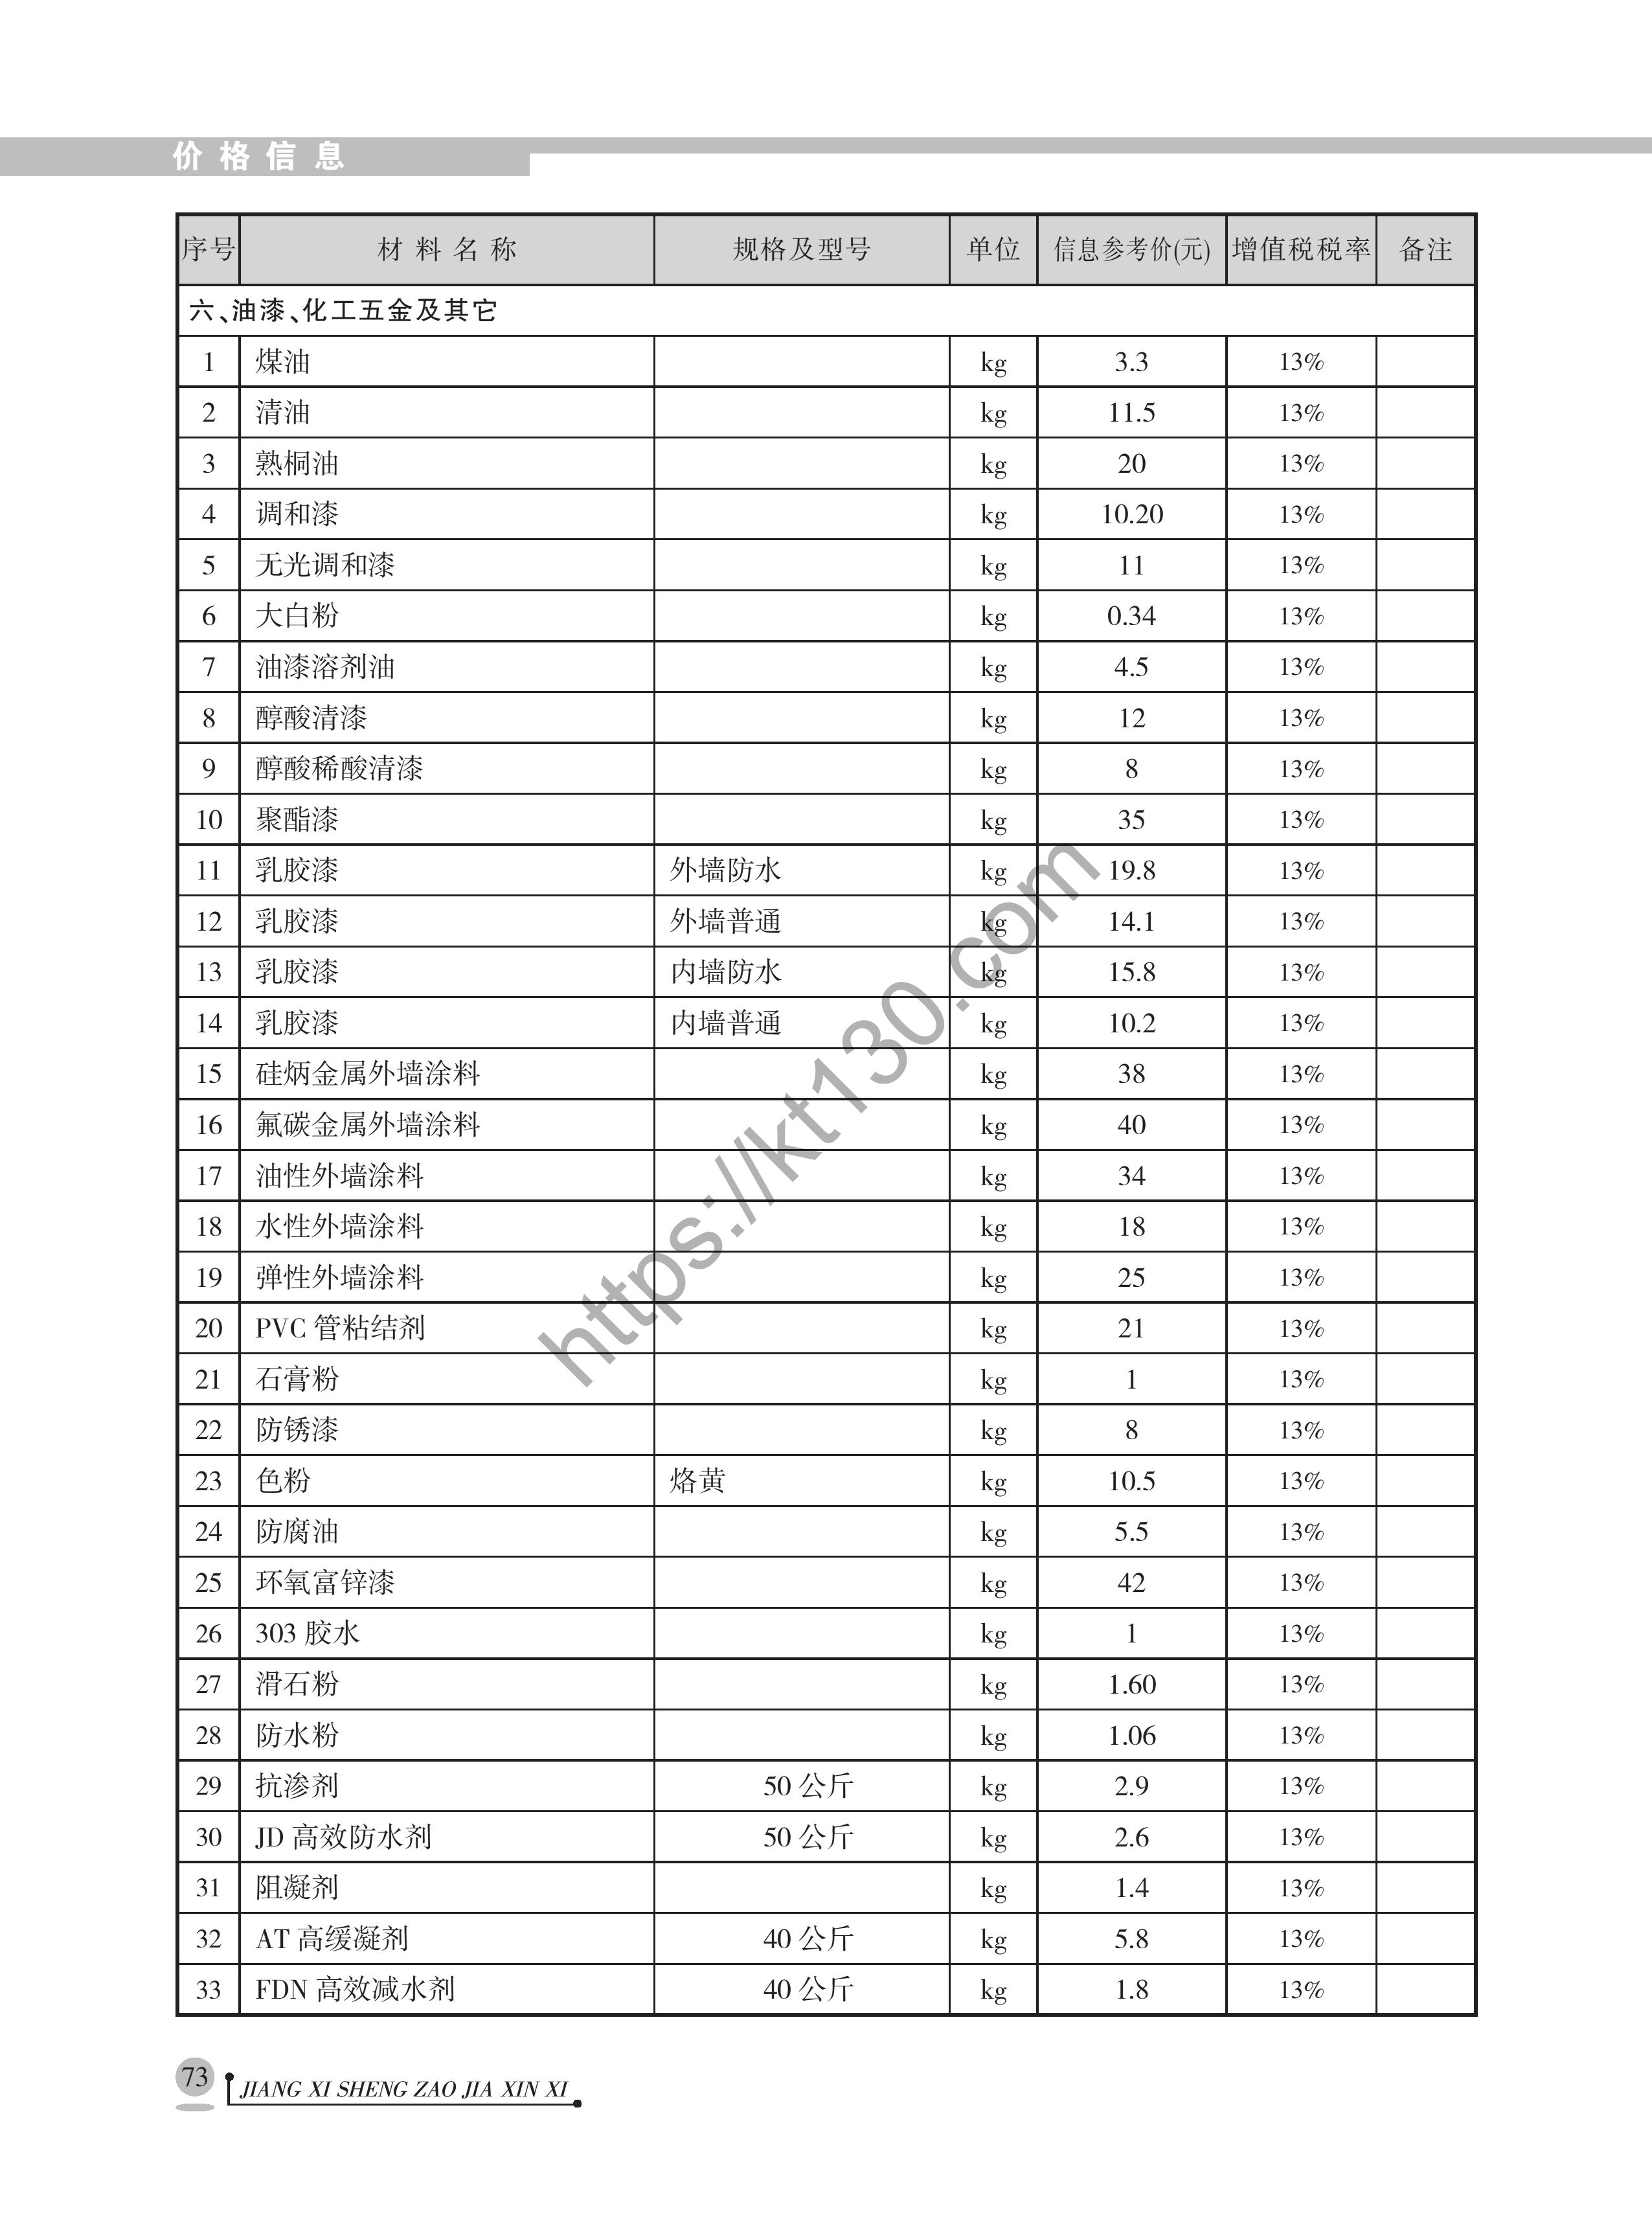 江西省2022年1月建筑材料价_化工五金及其他_40123